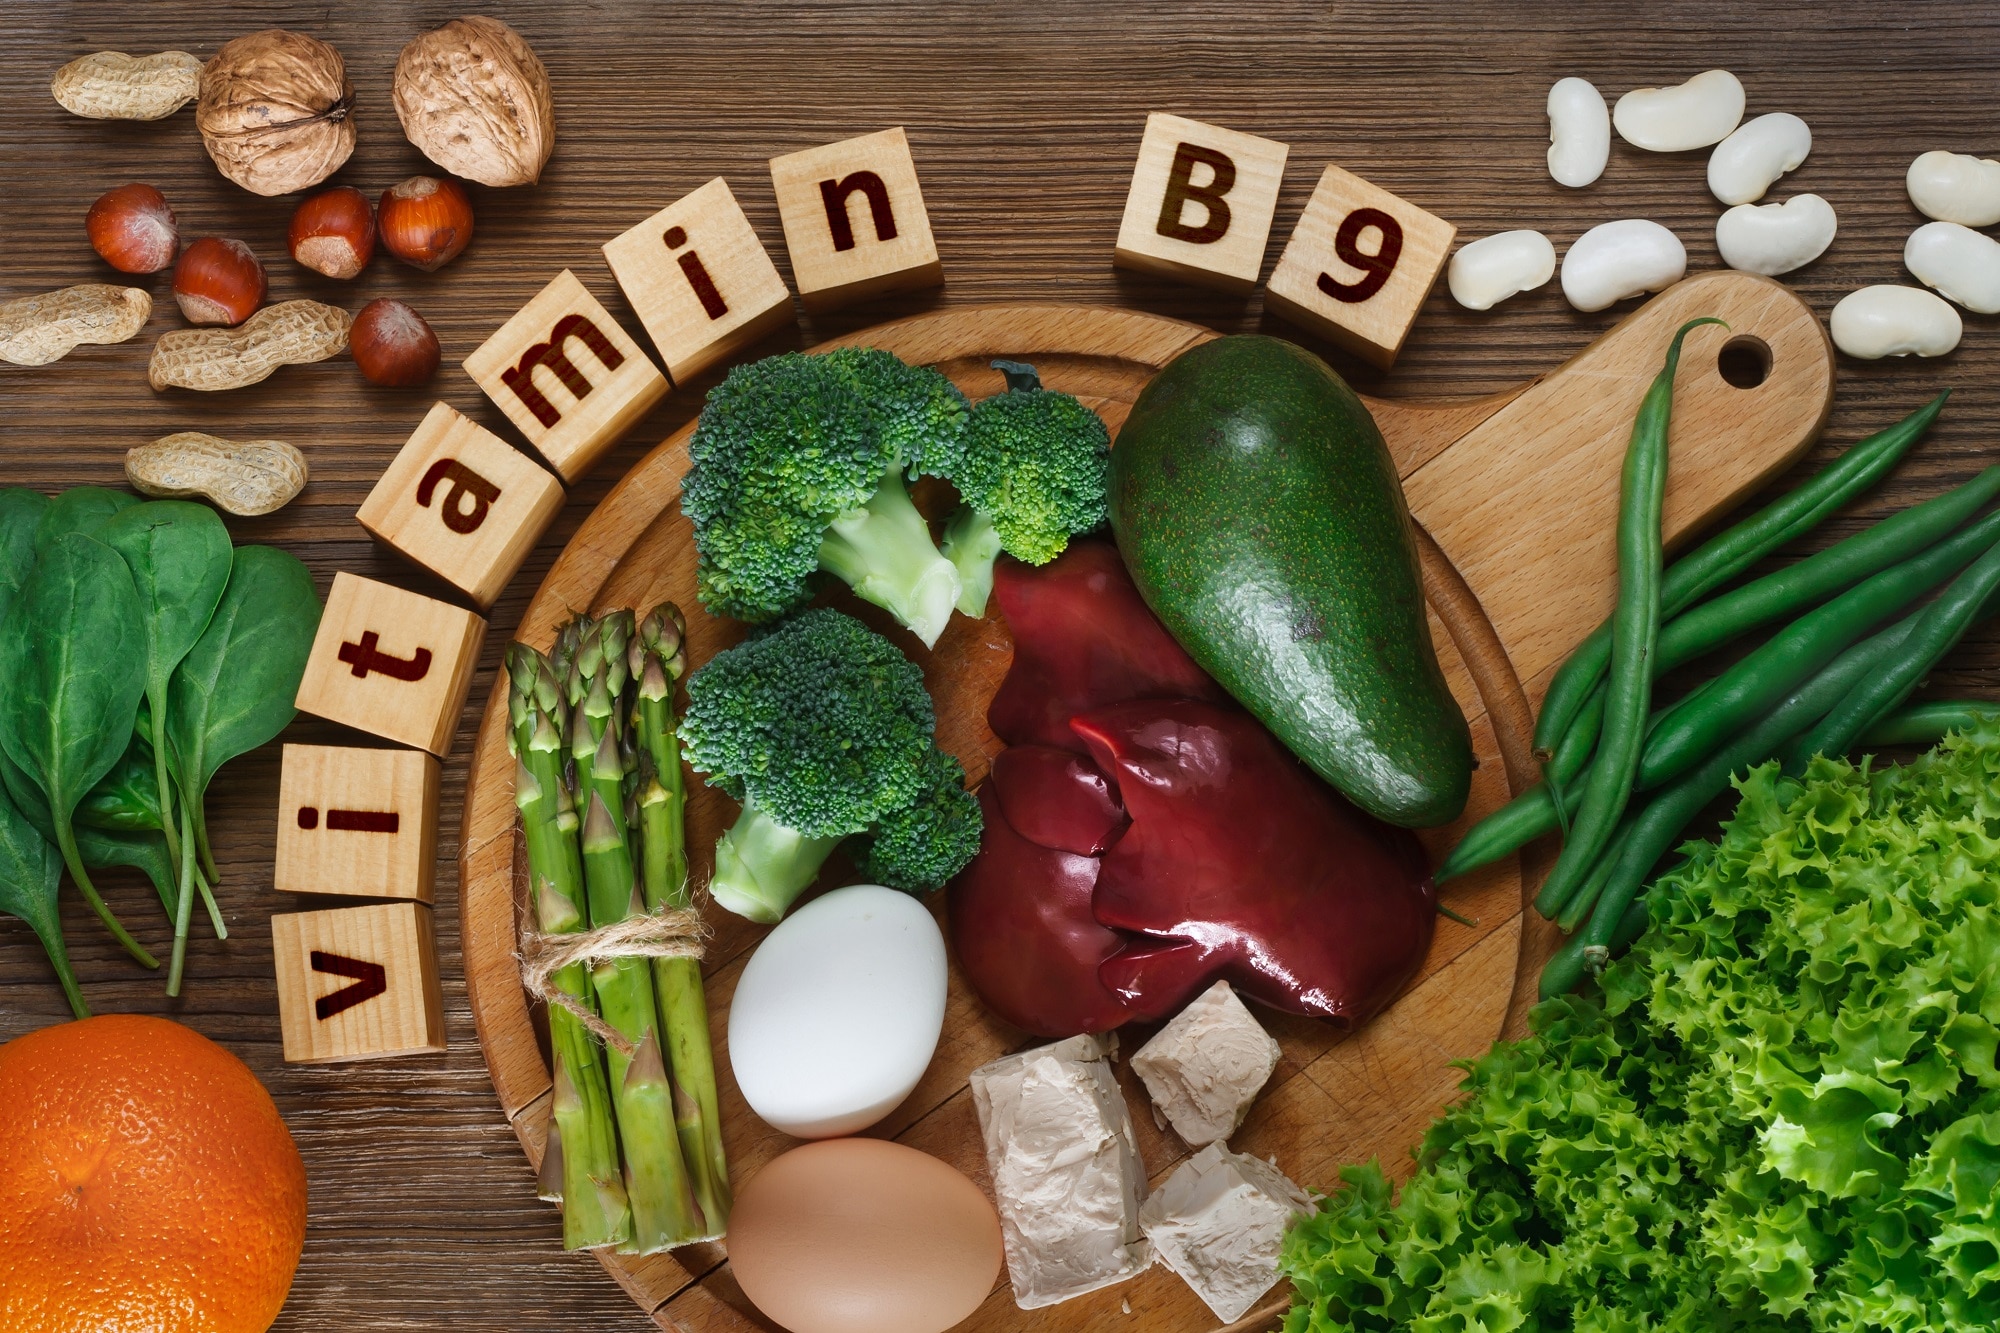 Aliments assortis riches en vitamine B9 (folate) présentés avec une étiquette inscrite dans des blocs de bois, illustrant le savoir-faire nécessaire pour traiter la carence en vitamine B9.